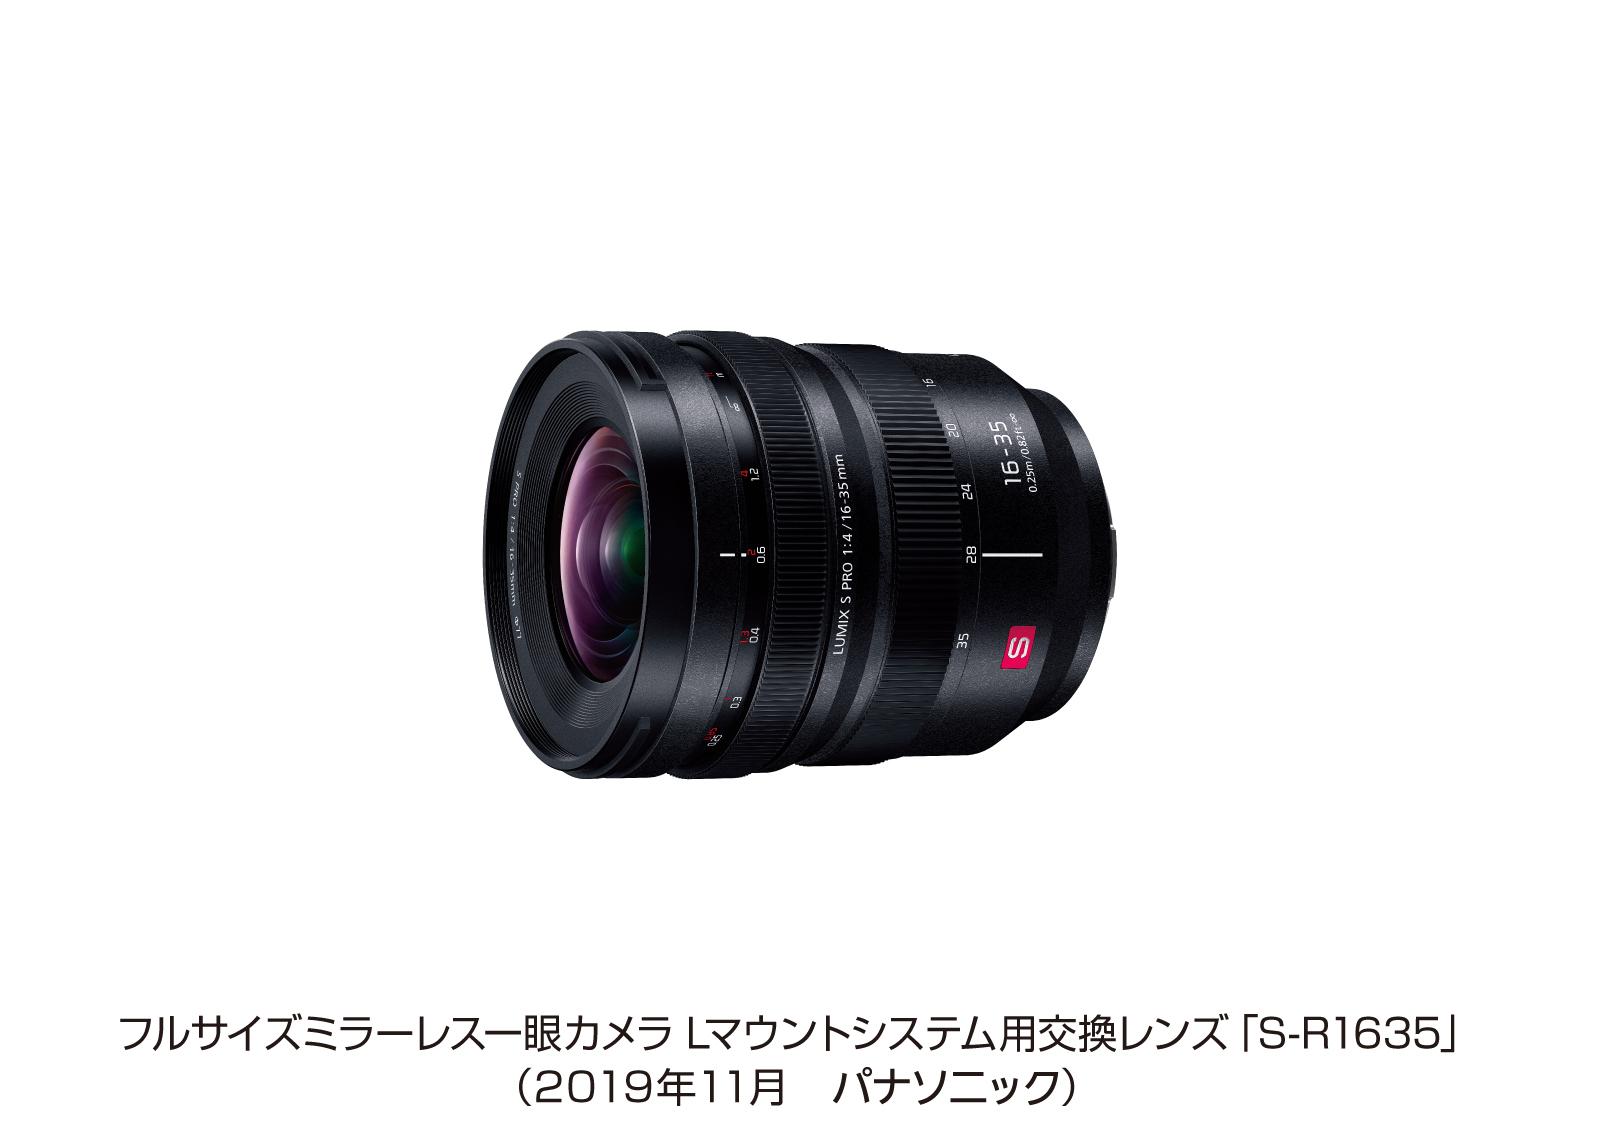 フルサイズミラーレス一眼カメラ Lマウントシステム用交換レンズ「S-R1635」